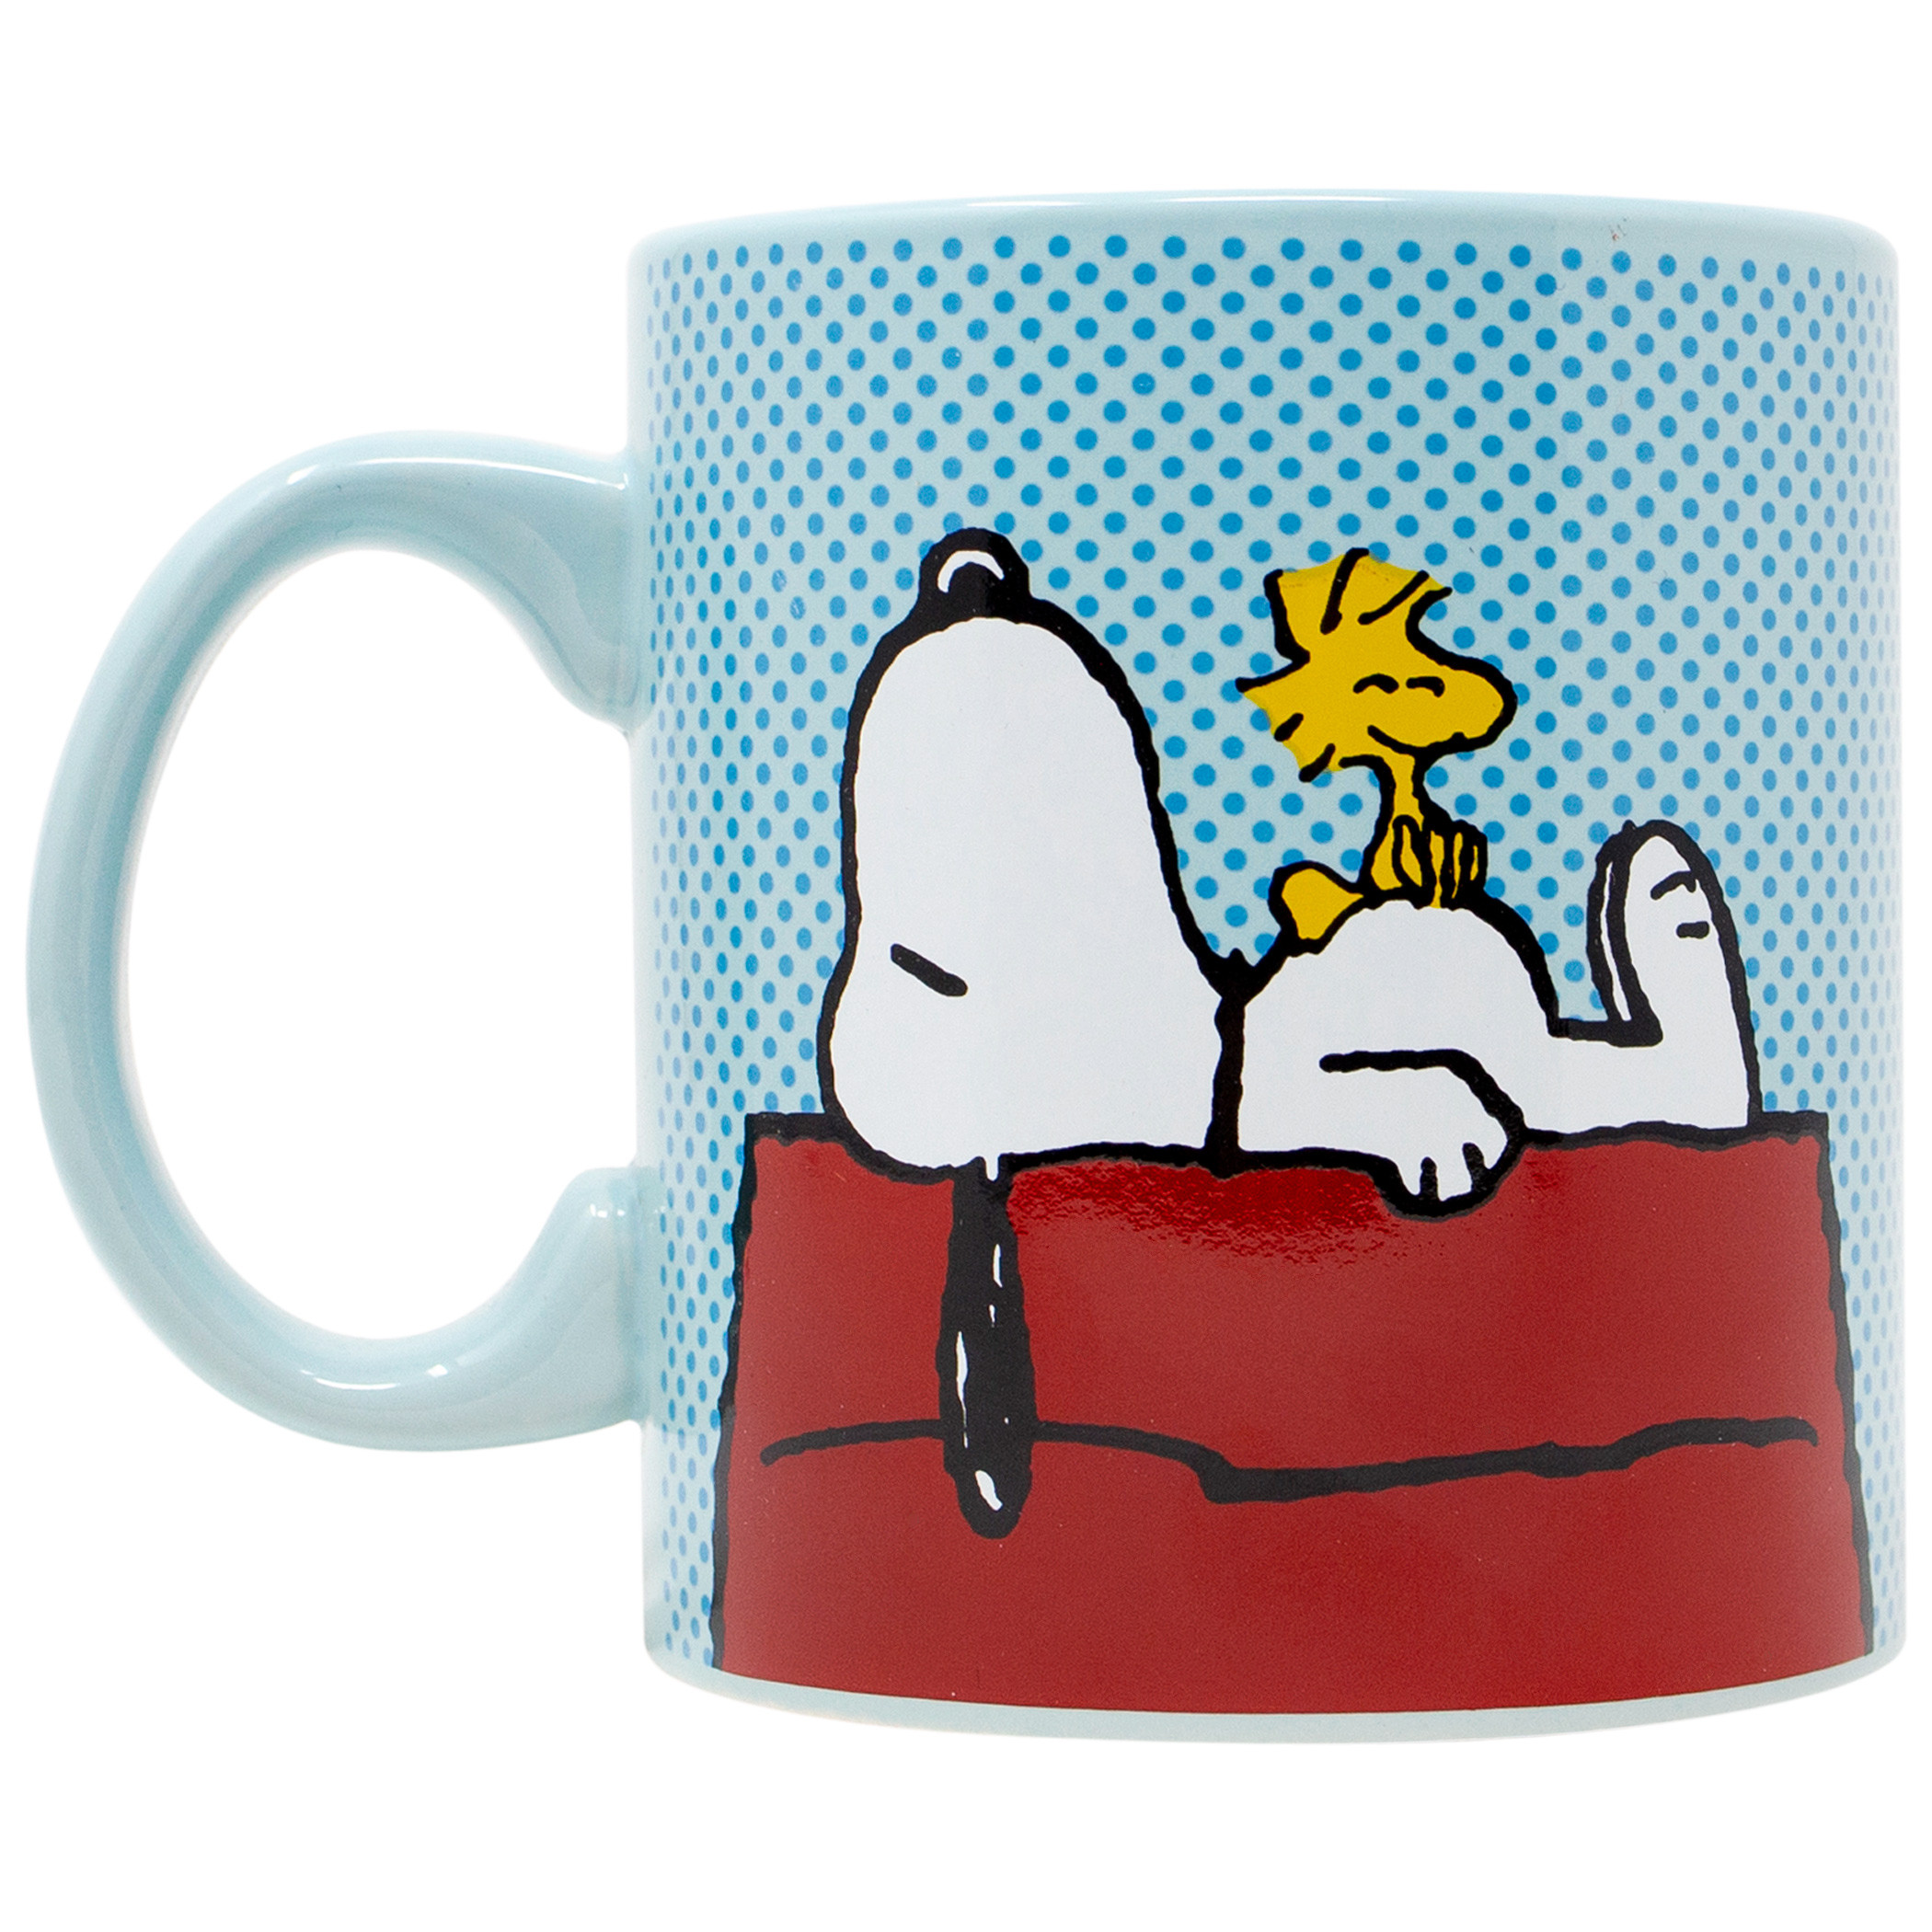 Peanuts Snoopy and Woodstock House 20oz Jumbo Ceramic Mug